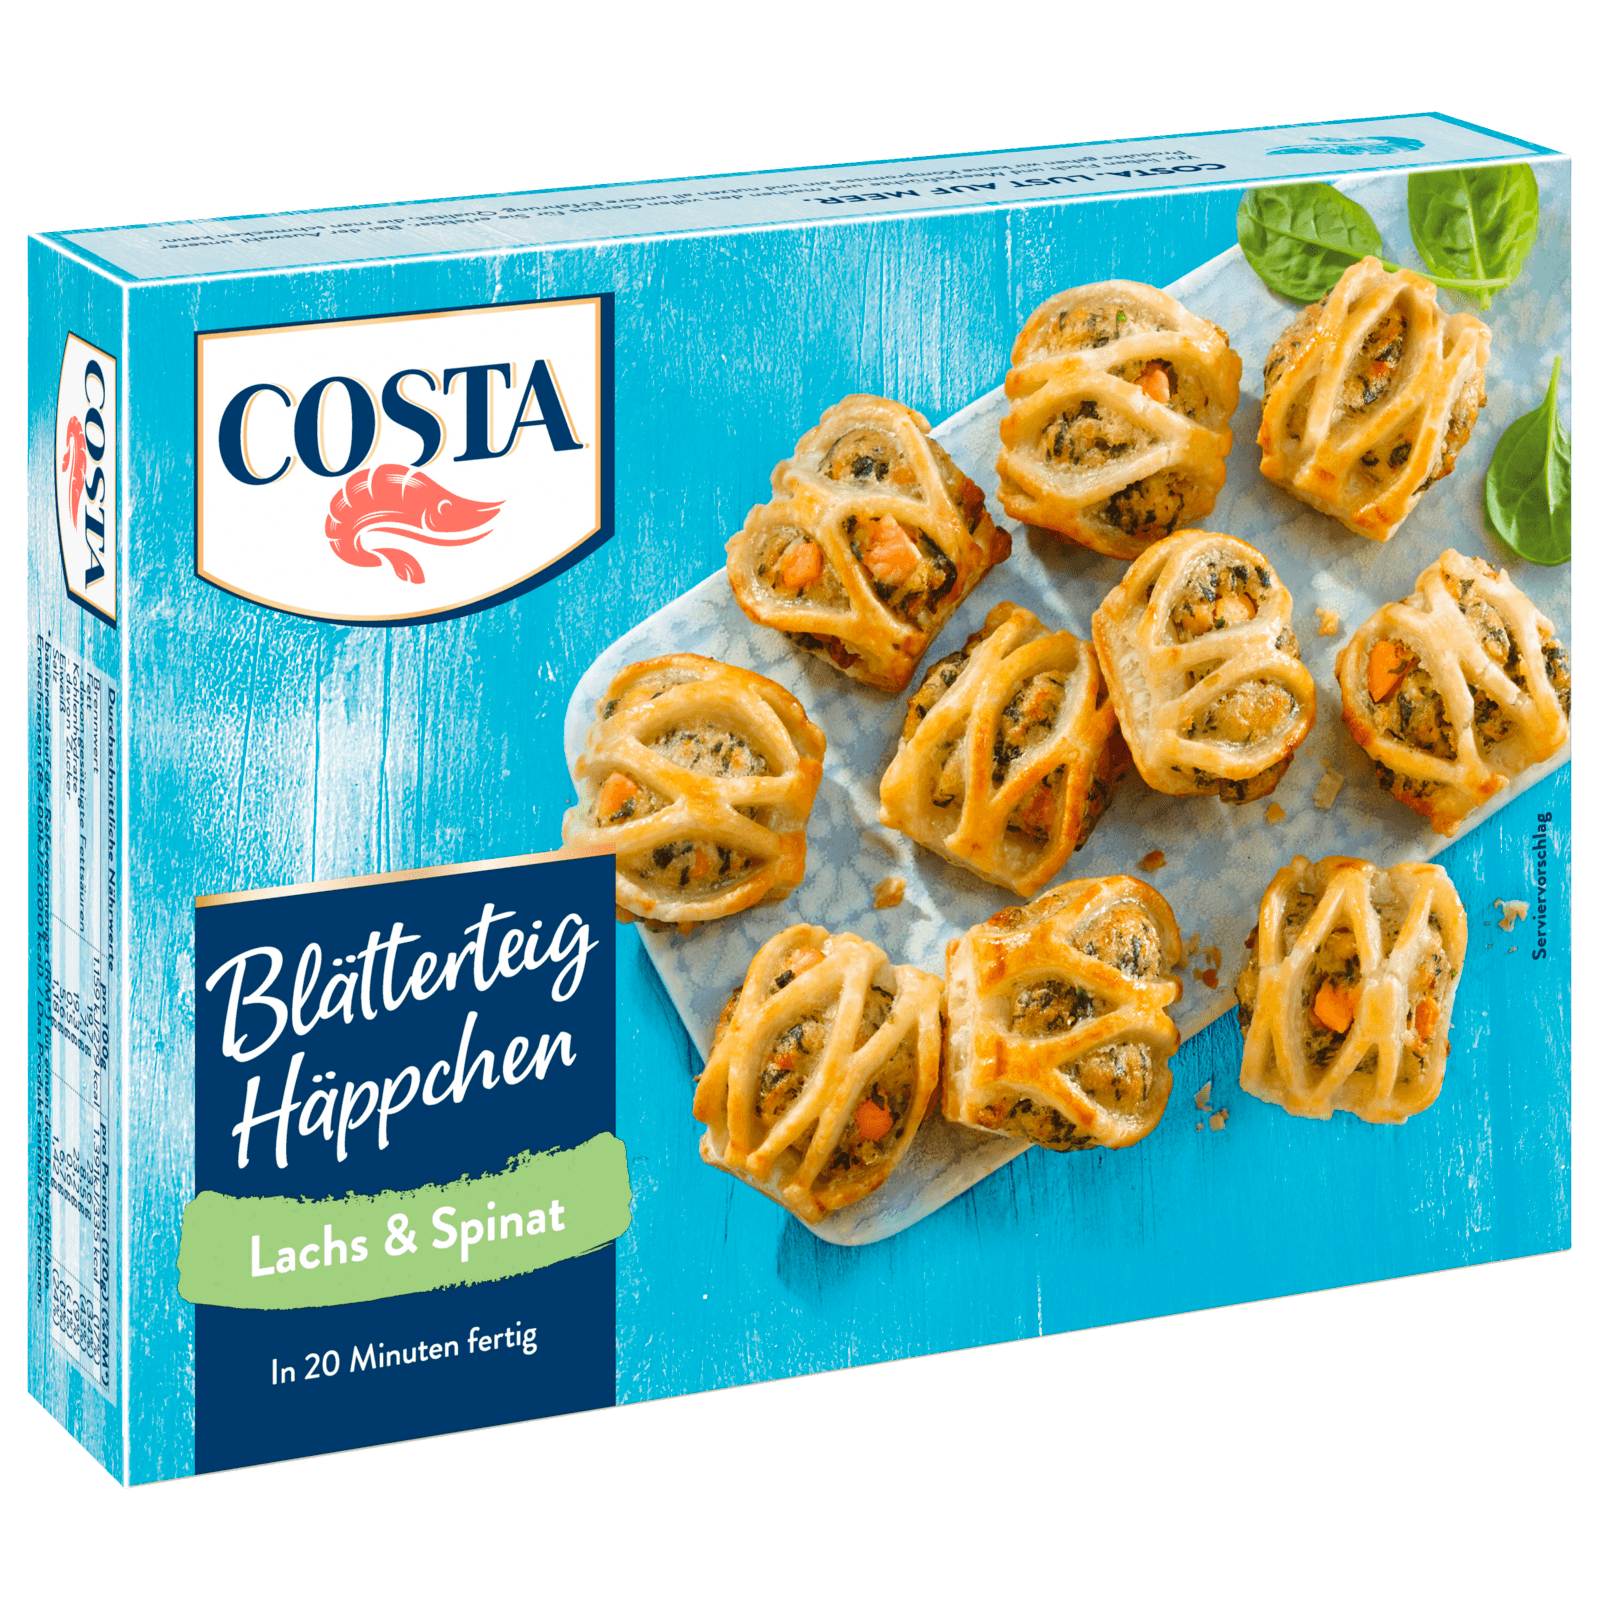 REWE online Spinat Costa & bei Lachs Blätterteig 240g bestellen! Häppchen